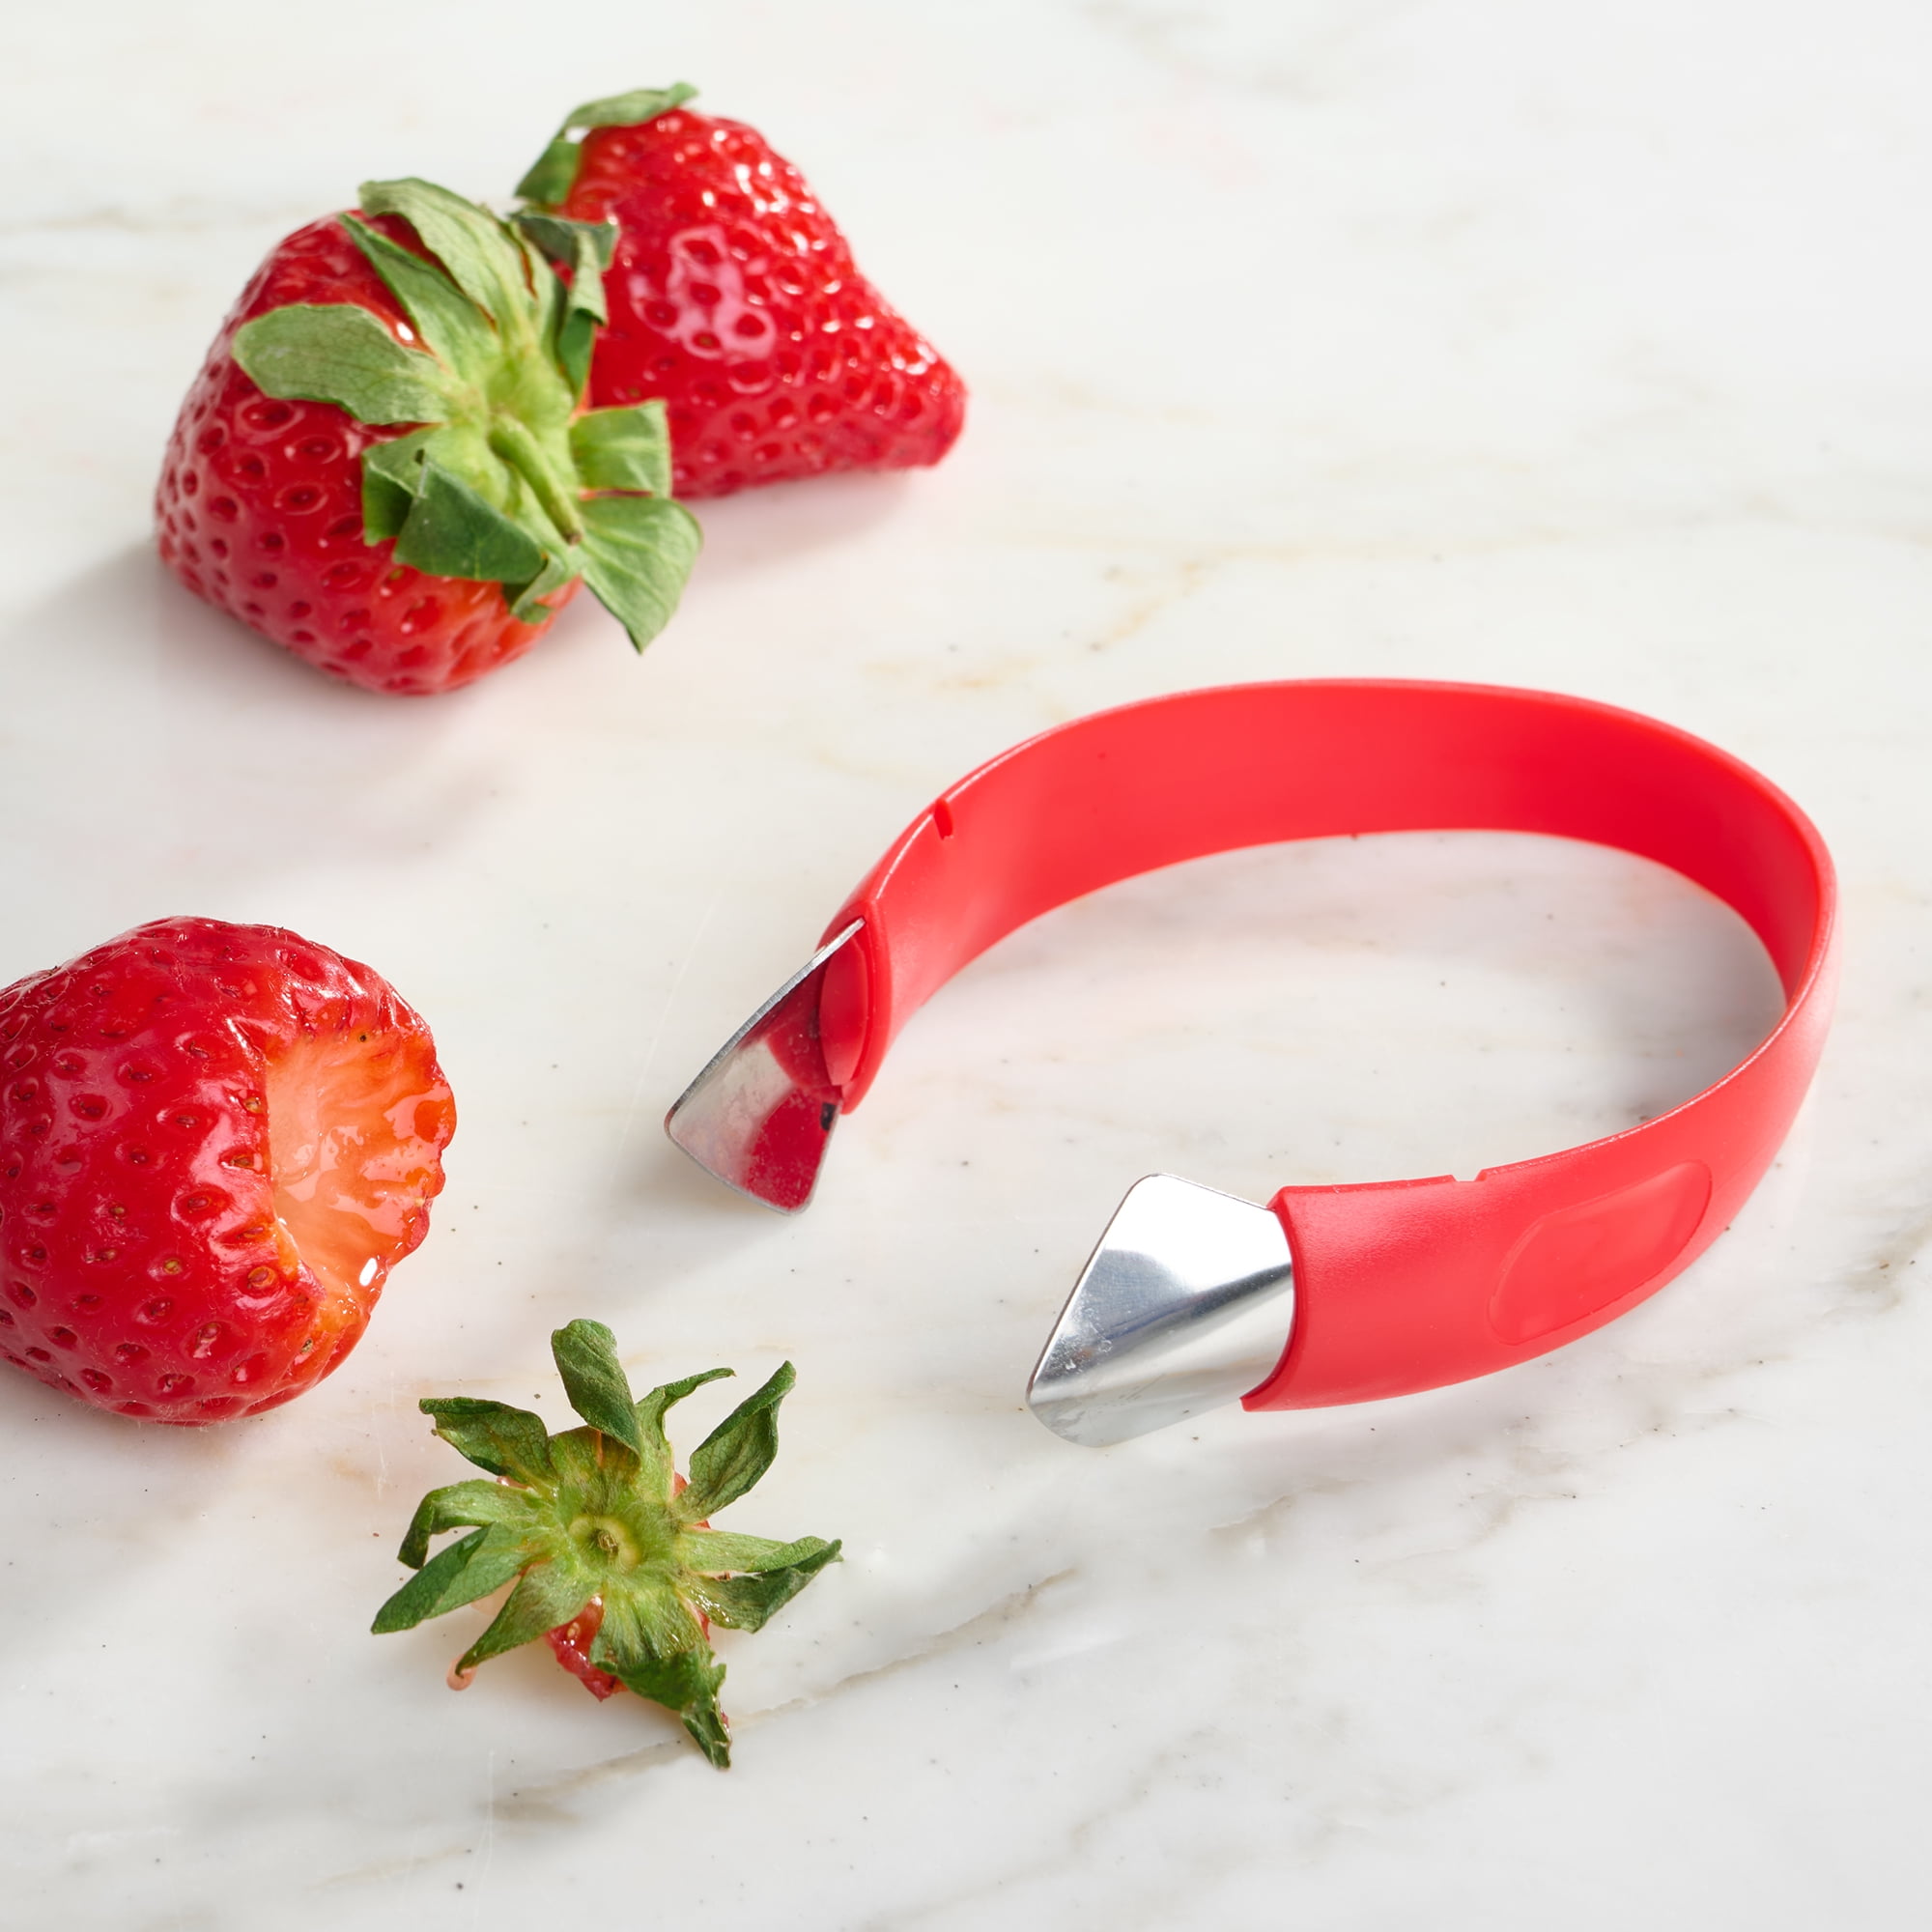 VTF1082 - Handy Strawberry Slicer